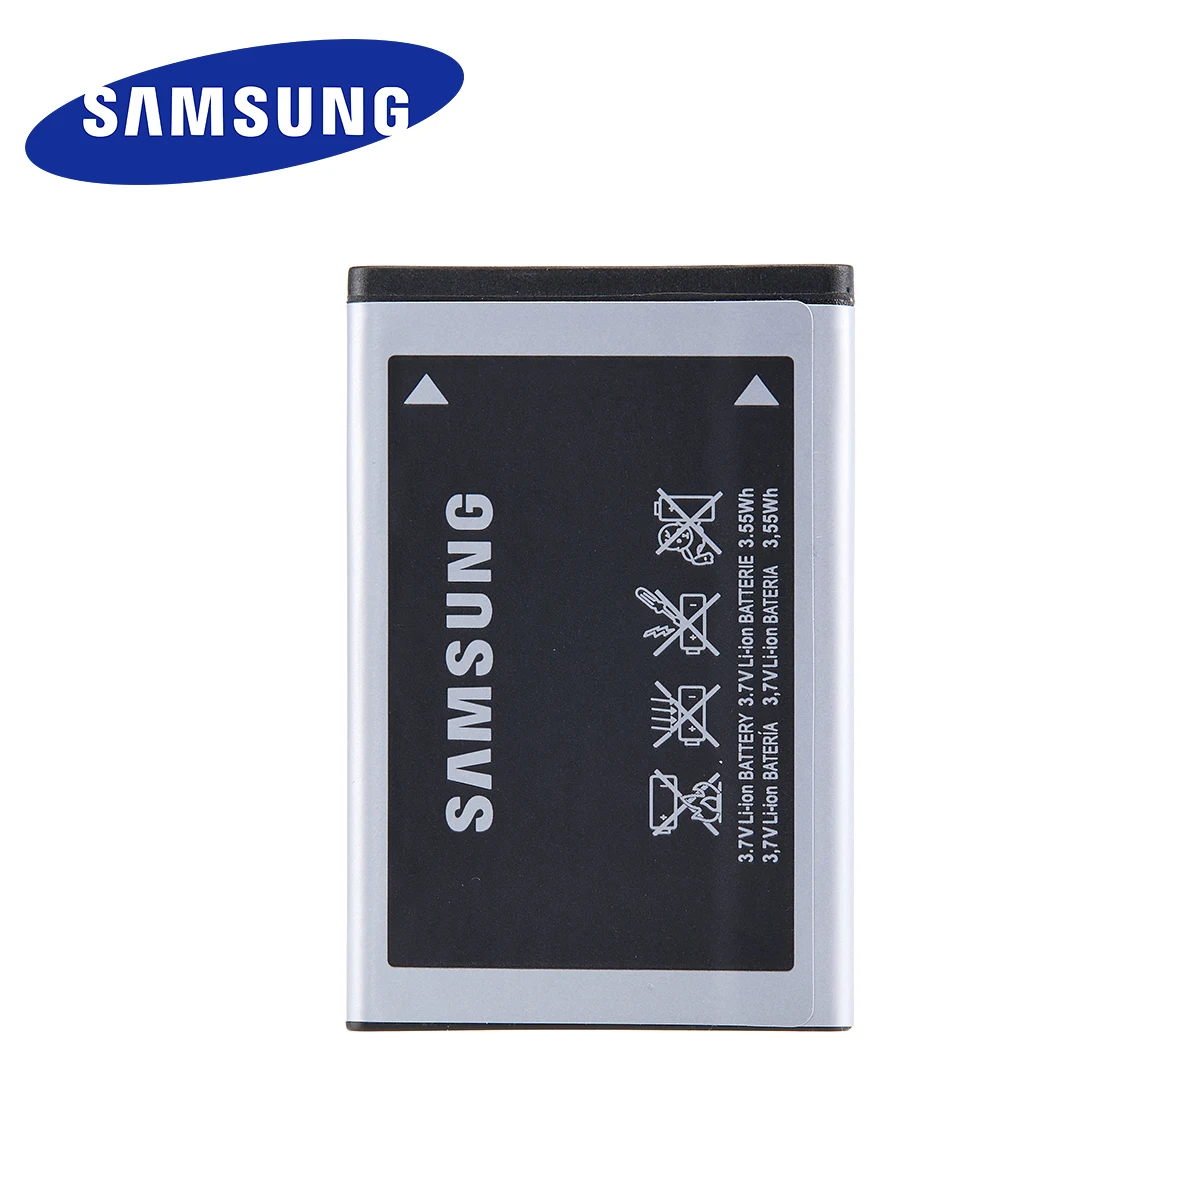 Ajunși afară a merge la cumparaturi Şir  Samsung Orginal Ab463651bu Battery For Samsung S5620i S5630c S5560c W559  J808 F339 S5296 C3322 L708e C3370 C3200 C3518 Batteries - Mobile Phone  Batteries - AliExpress